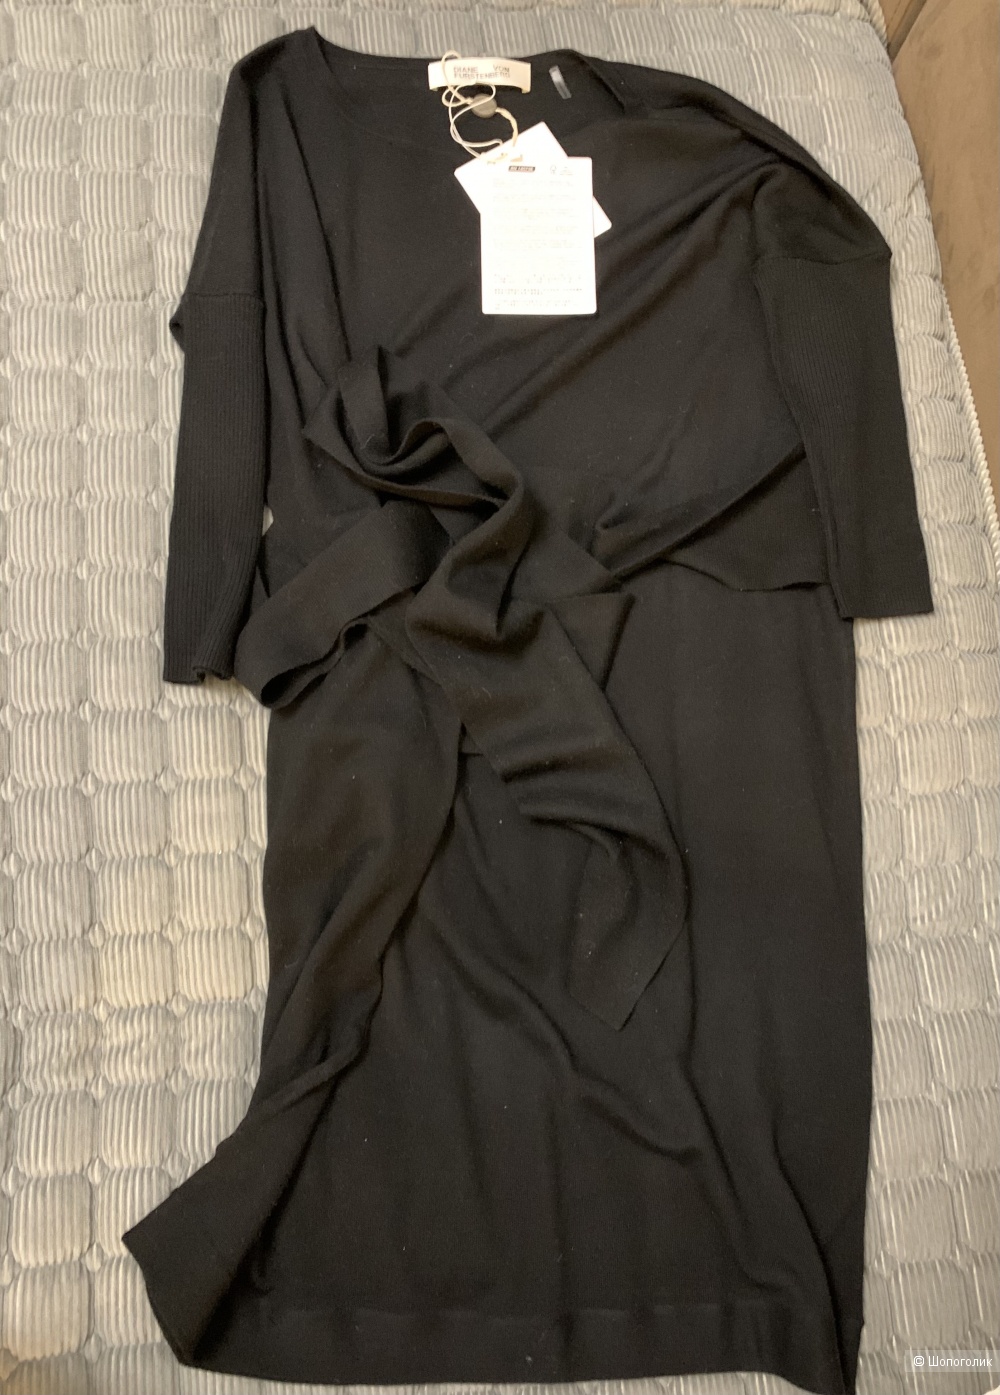 Платье Diane von furstenberg, xs-s